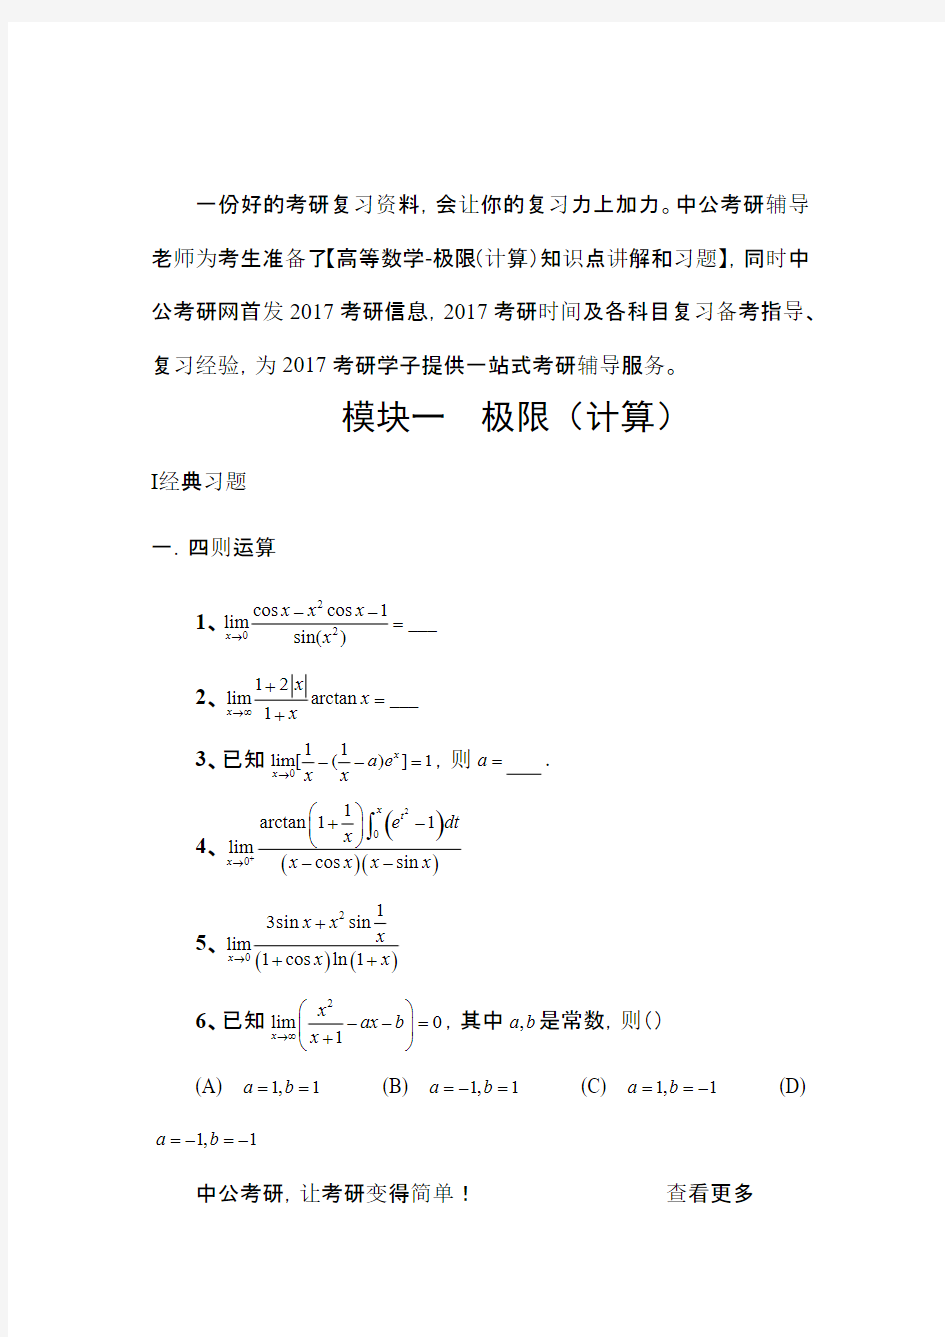 考研数学高等数学强化习题-极限(计算)